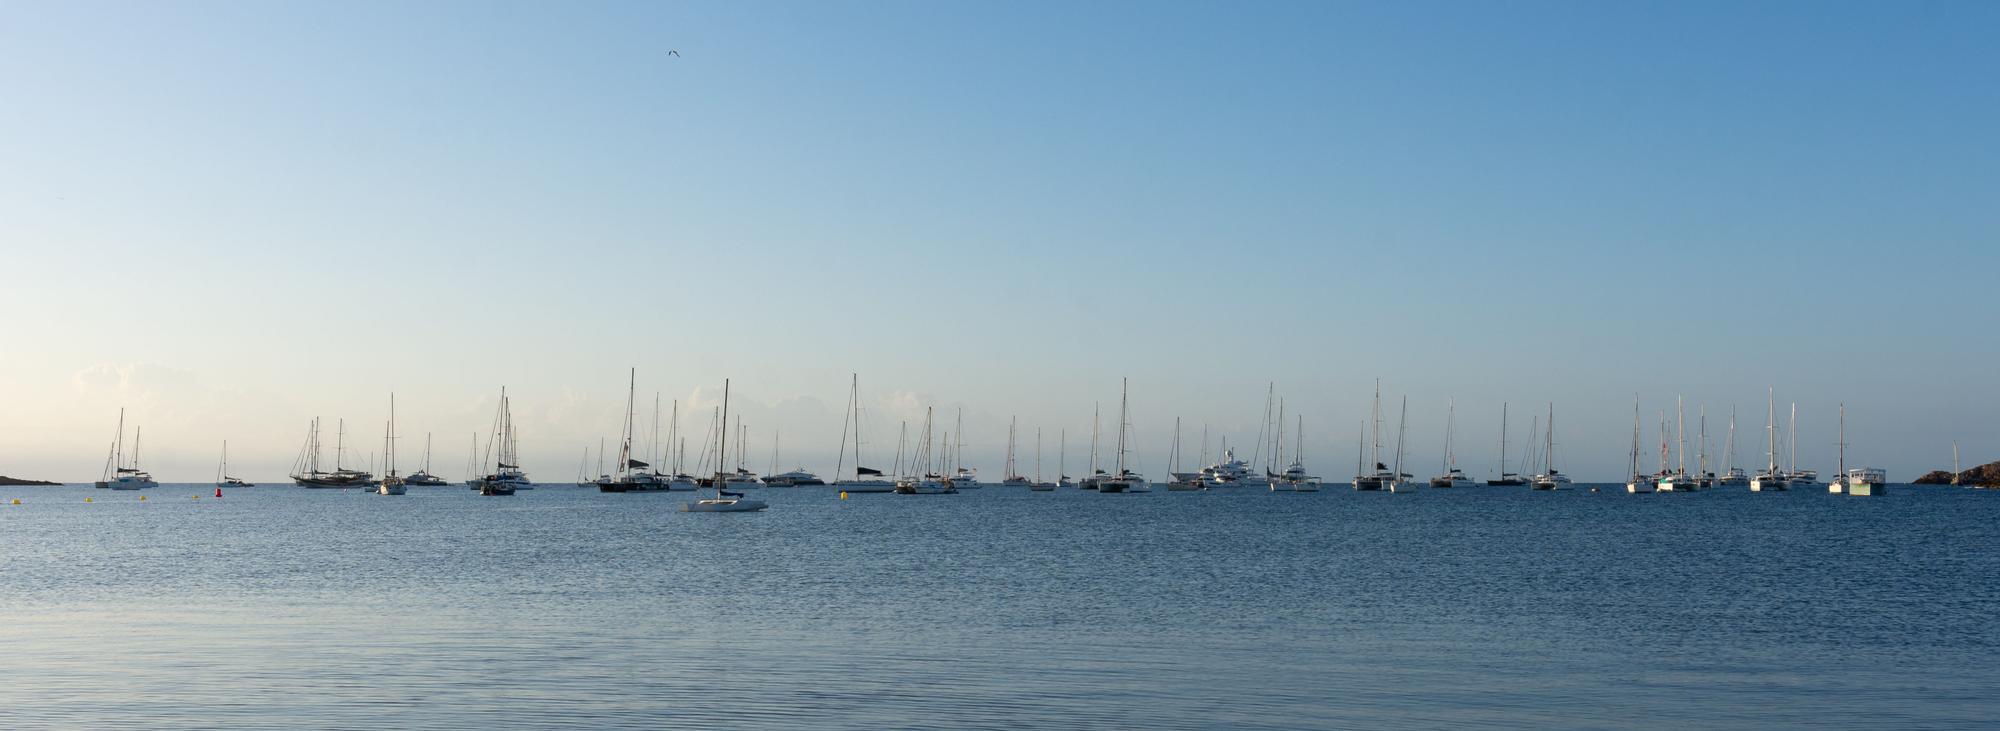 El horizonte de Ibiza queda oculto tras los barcos